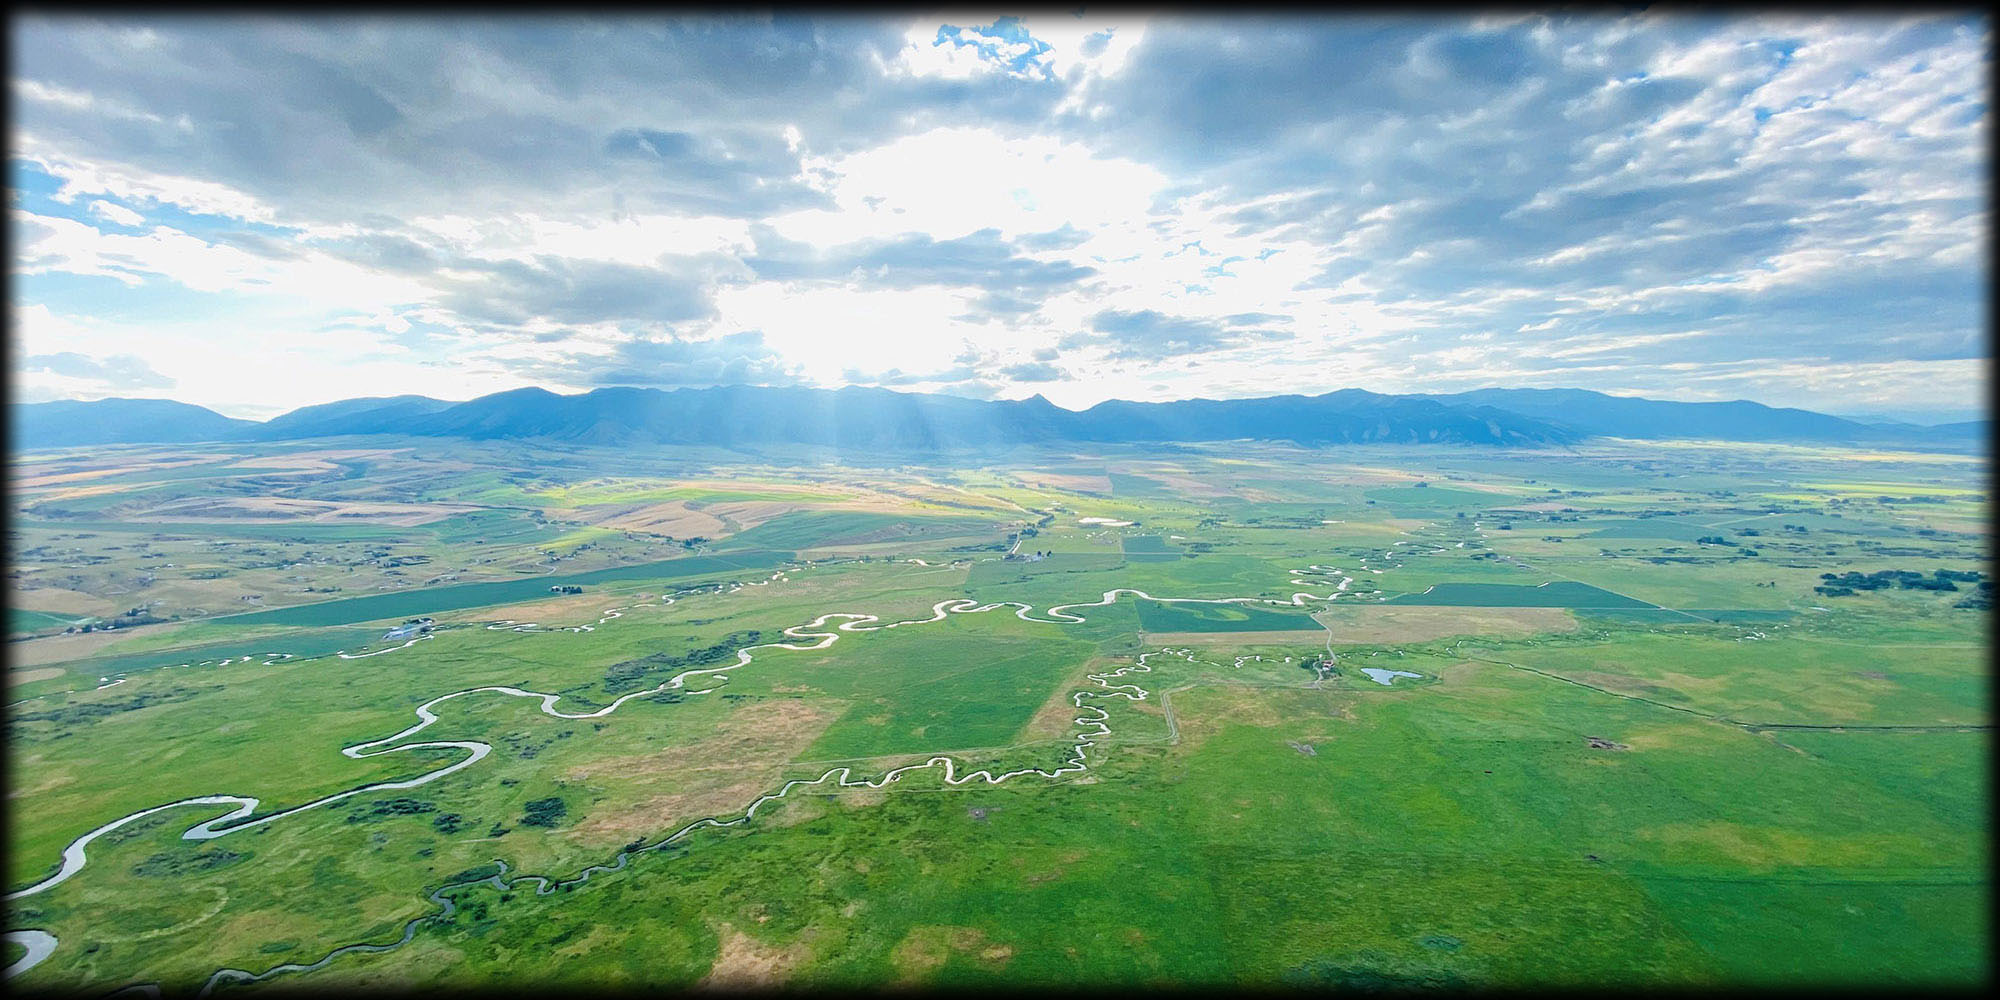 Gallatin Valley Montana Hot Air Balloon Spring View 2021